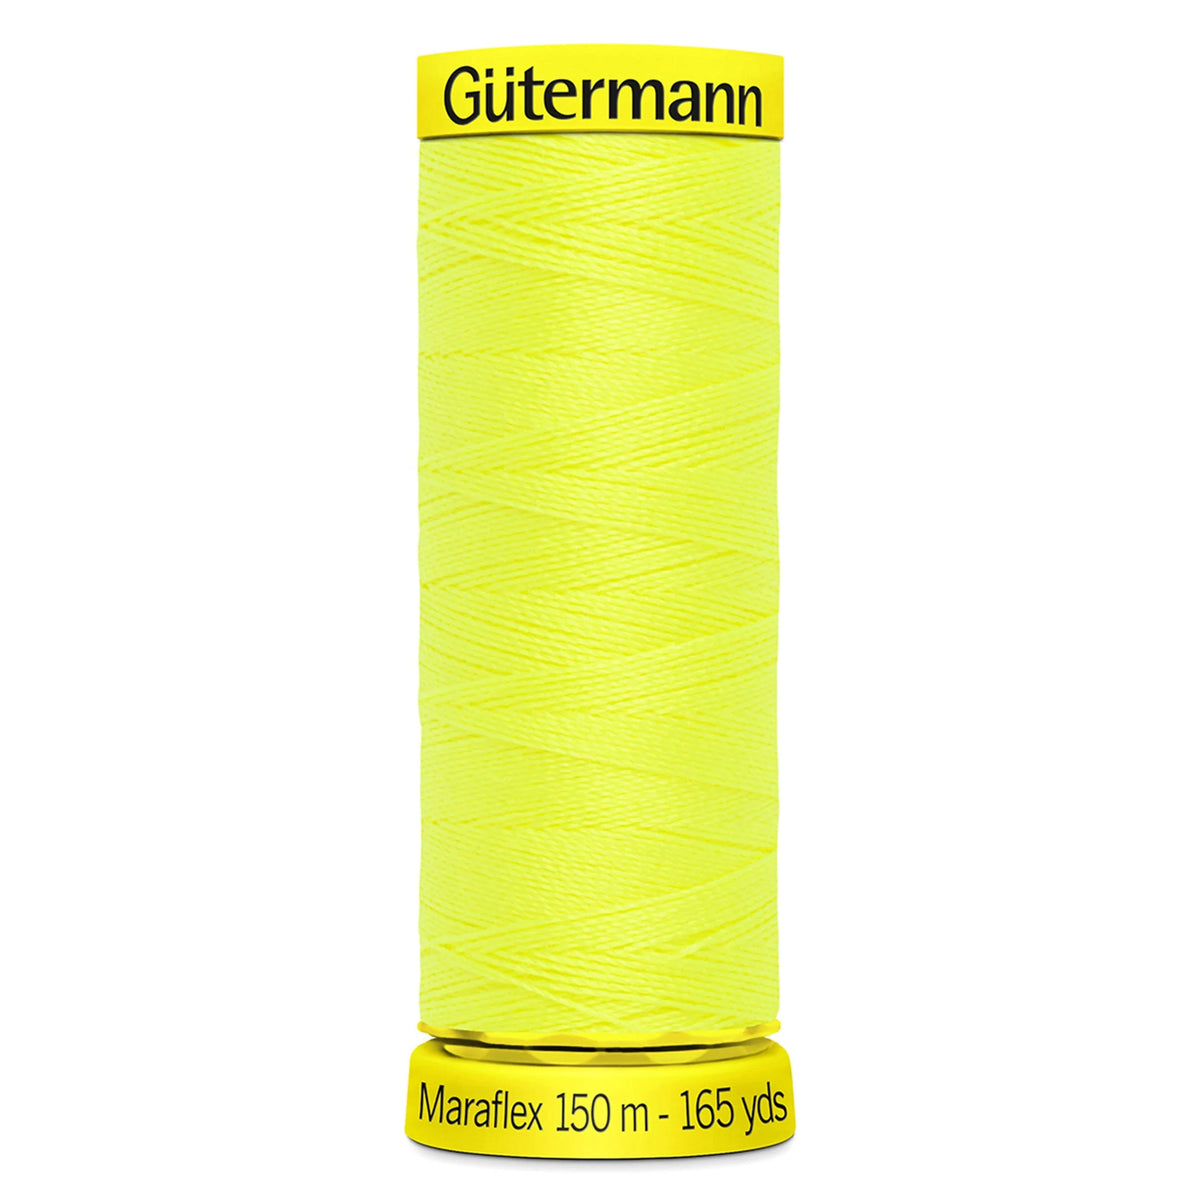 Gutermann Maraflex Elastic Stretch Thread 150m - Pound Fabrics